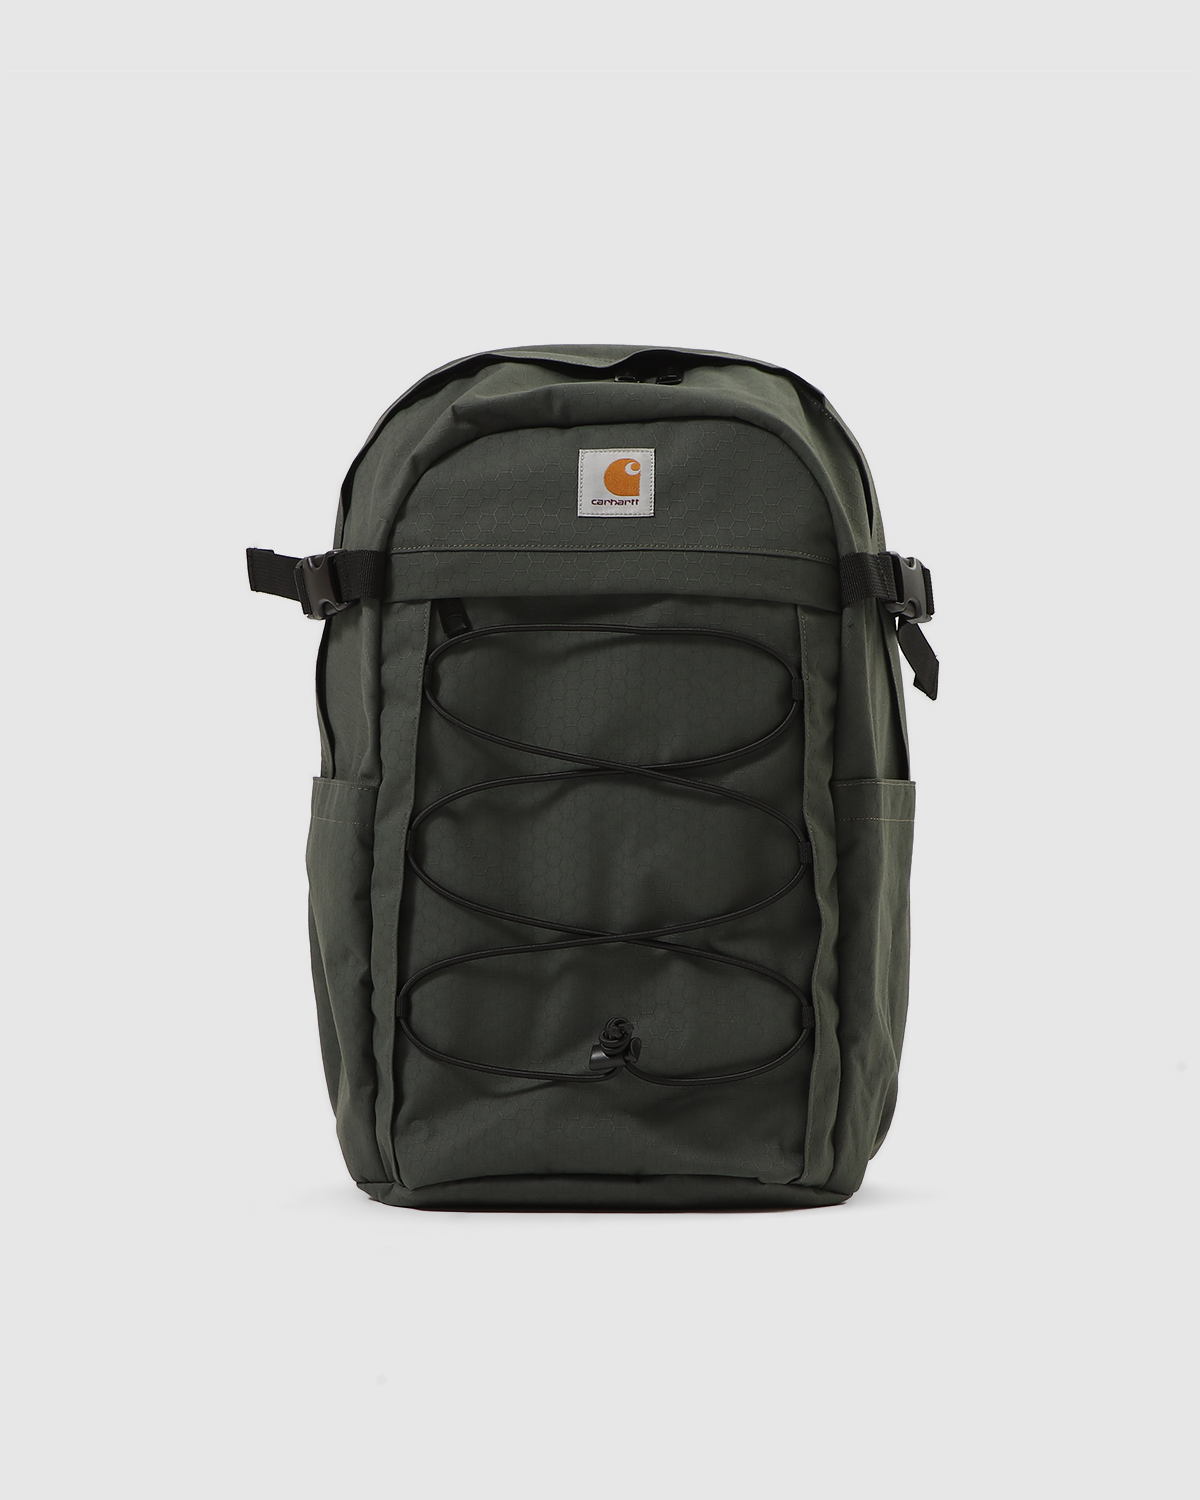 Carhartt Leon Military Green Backpack